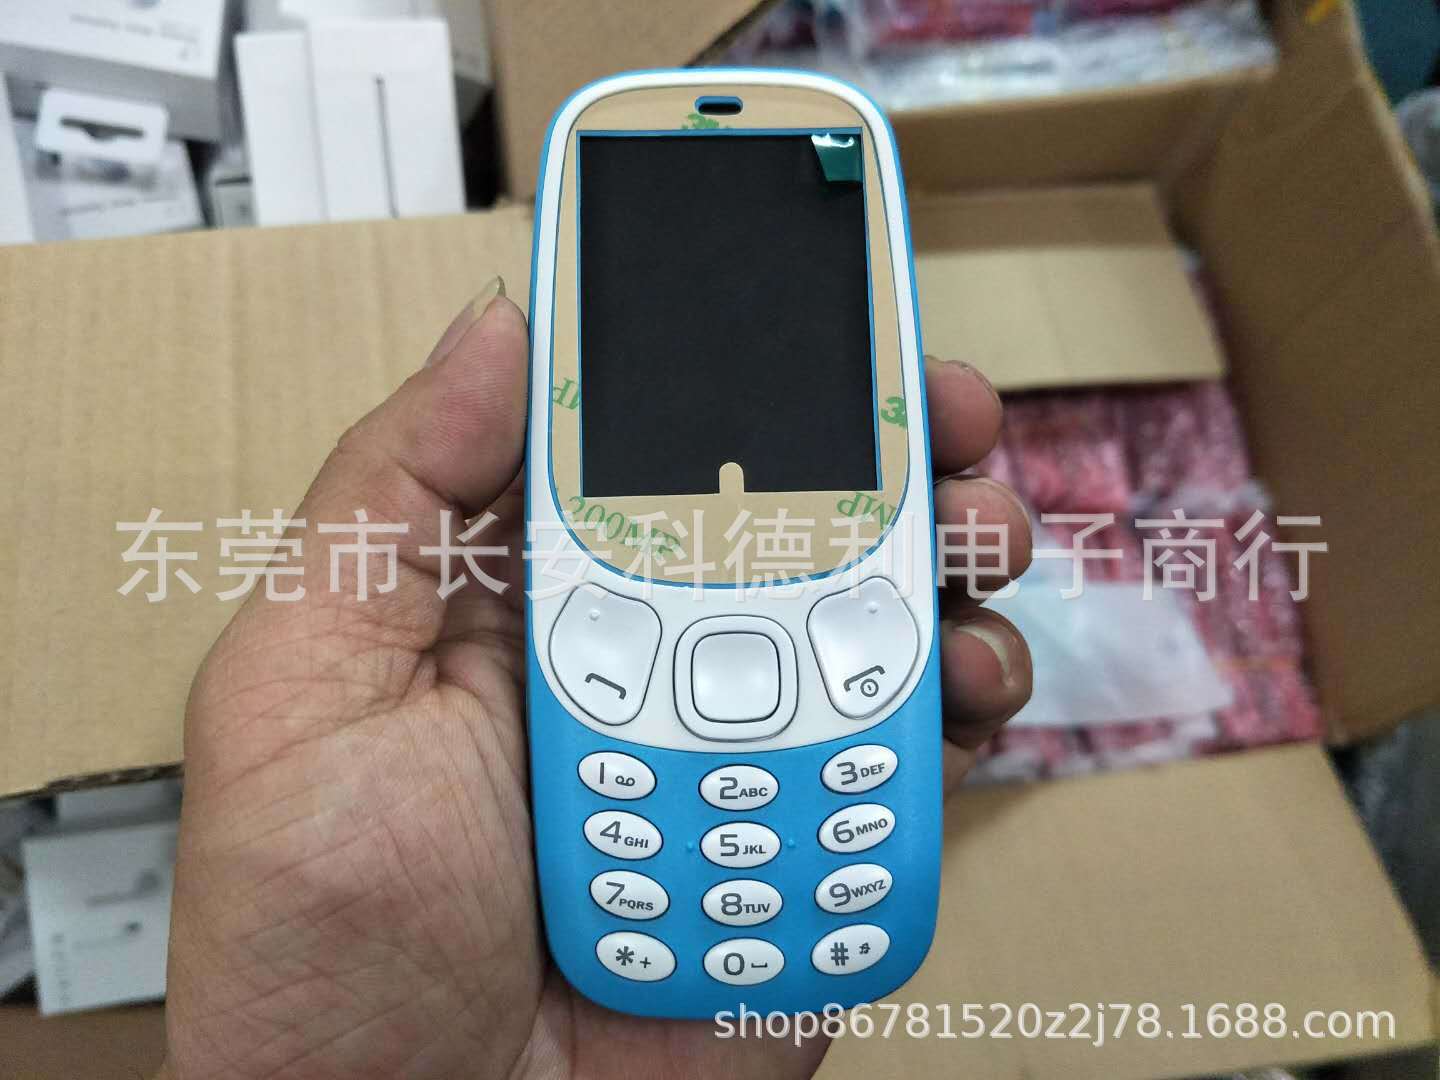 生产3310手机 2.4屏直板多国语言外贸手机 批发BM10 6310外文手机